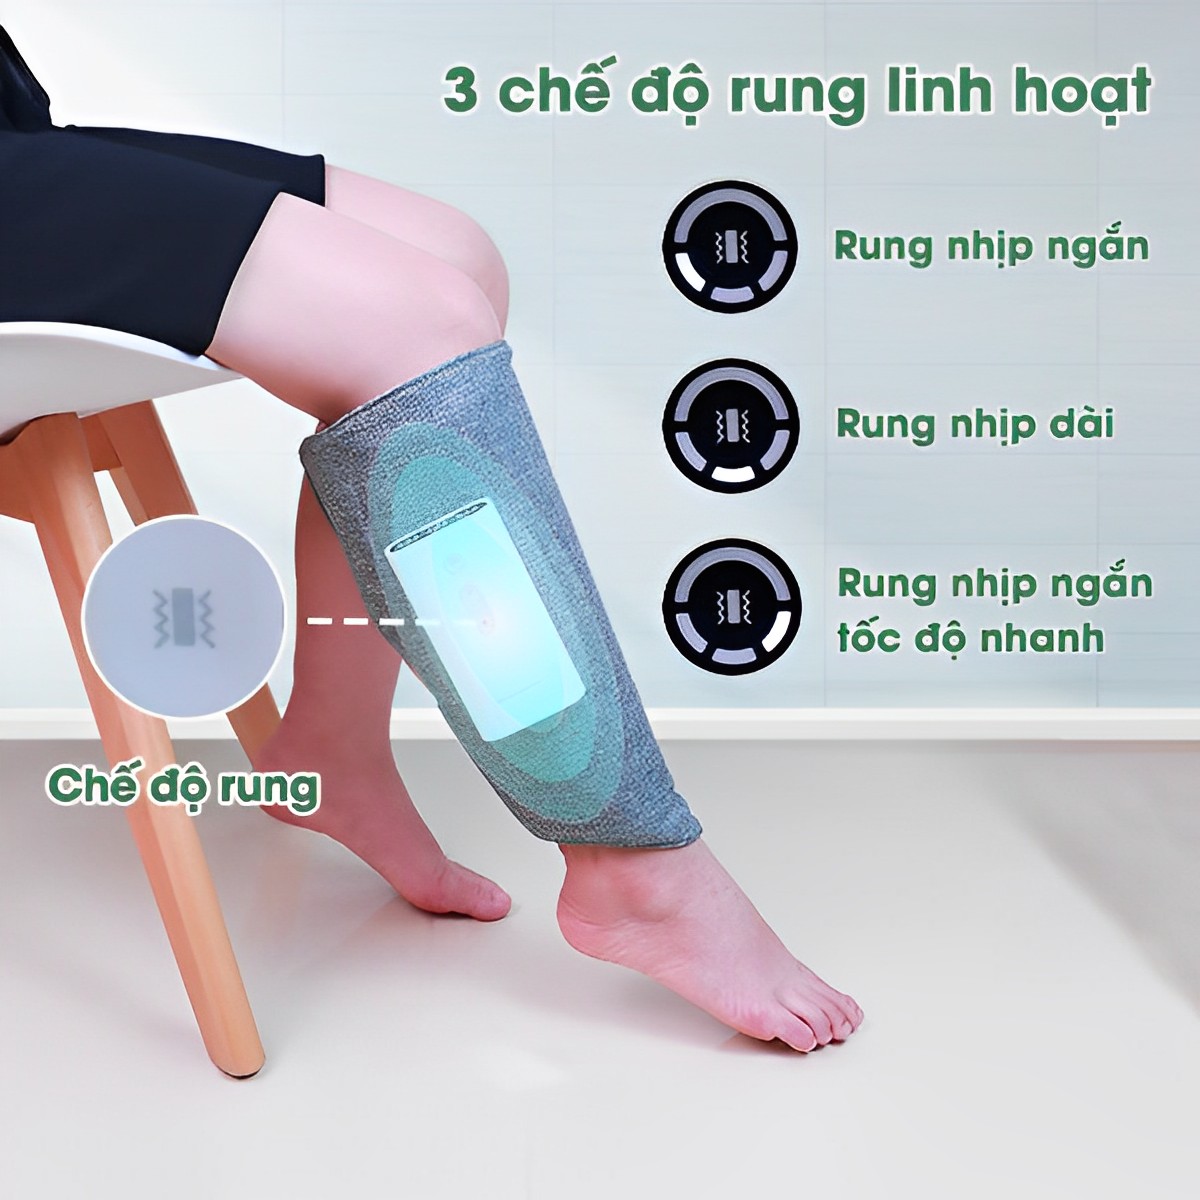 Máy massage bắp chân ,tay ,đùi giúp lưu thông khí huyết giảm đau mỏi tê bì, máy mát xa giúp thon gọn đùi bắp chân